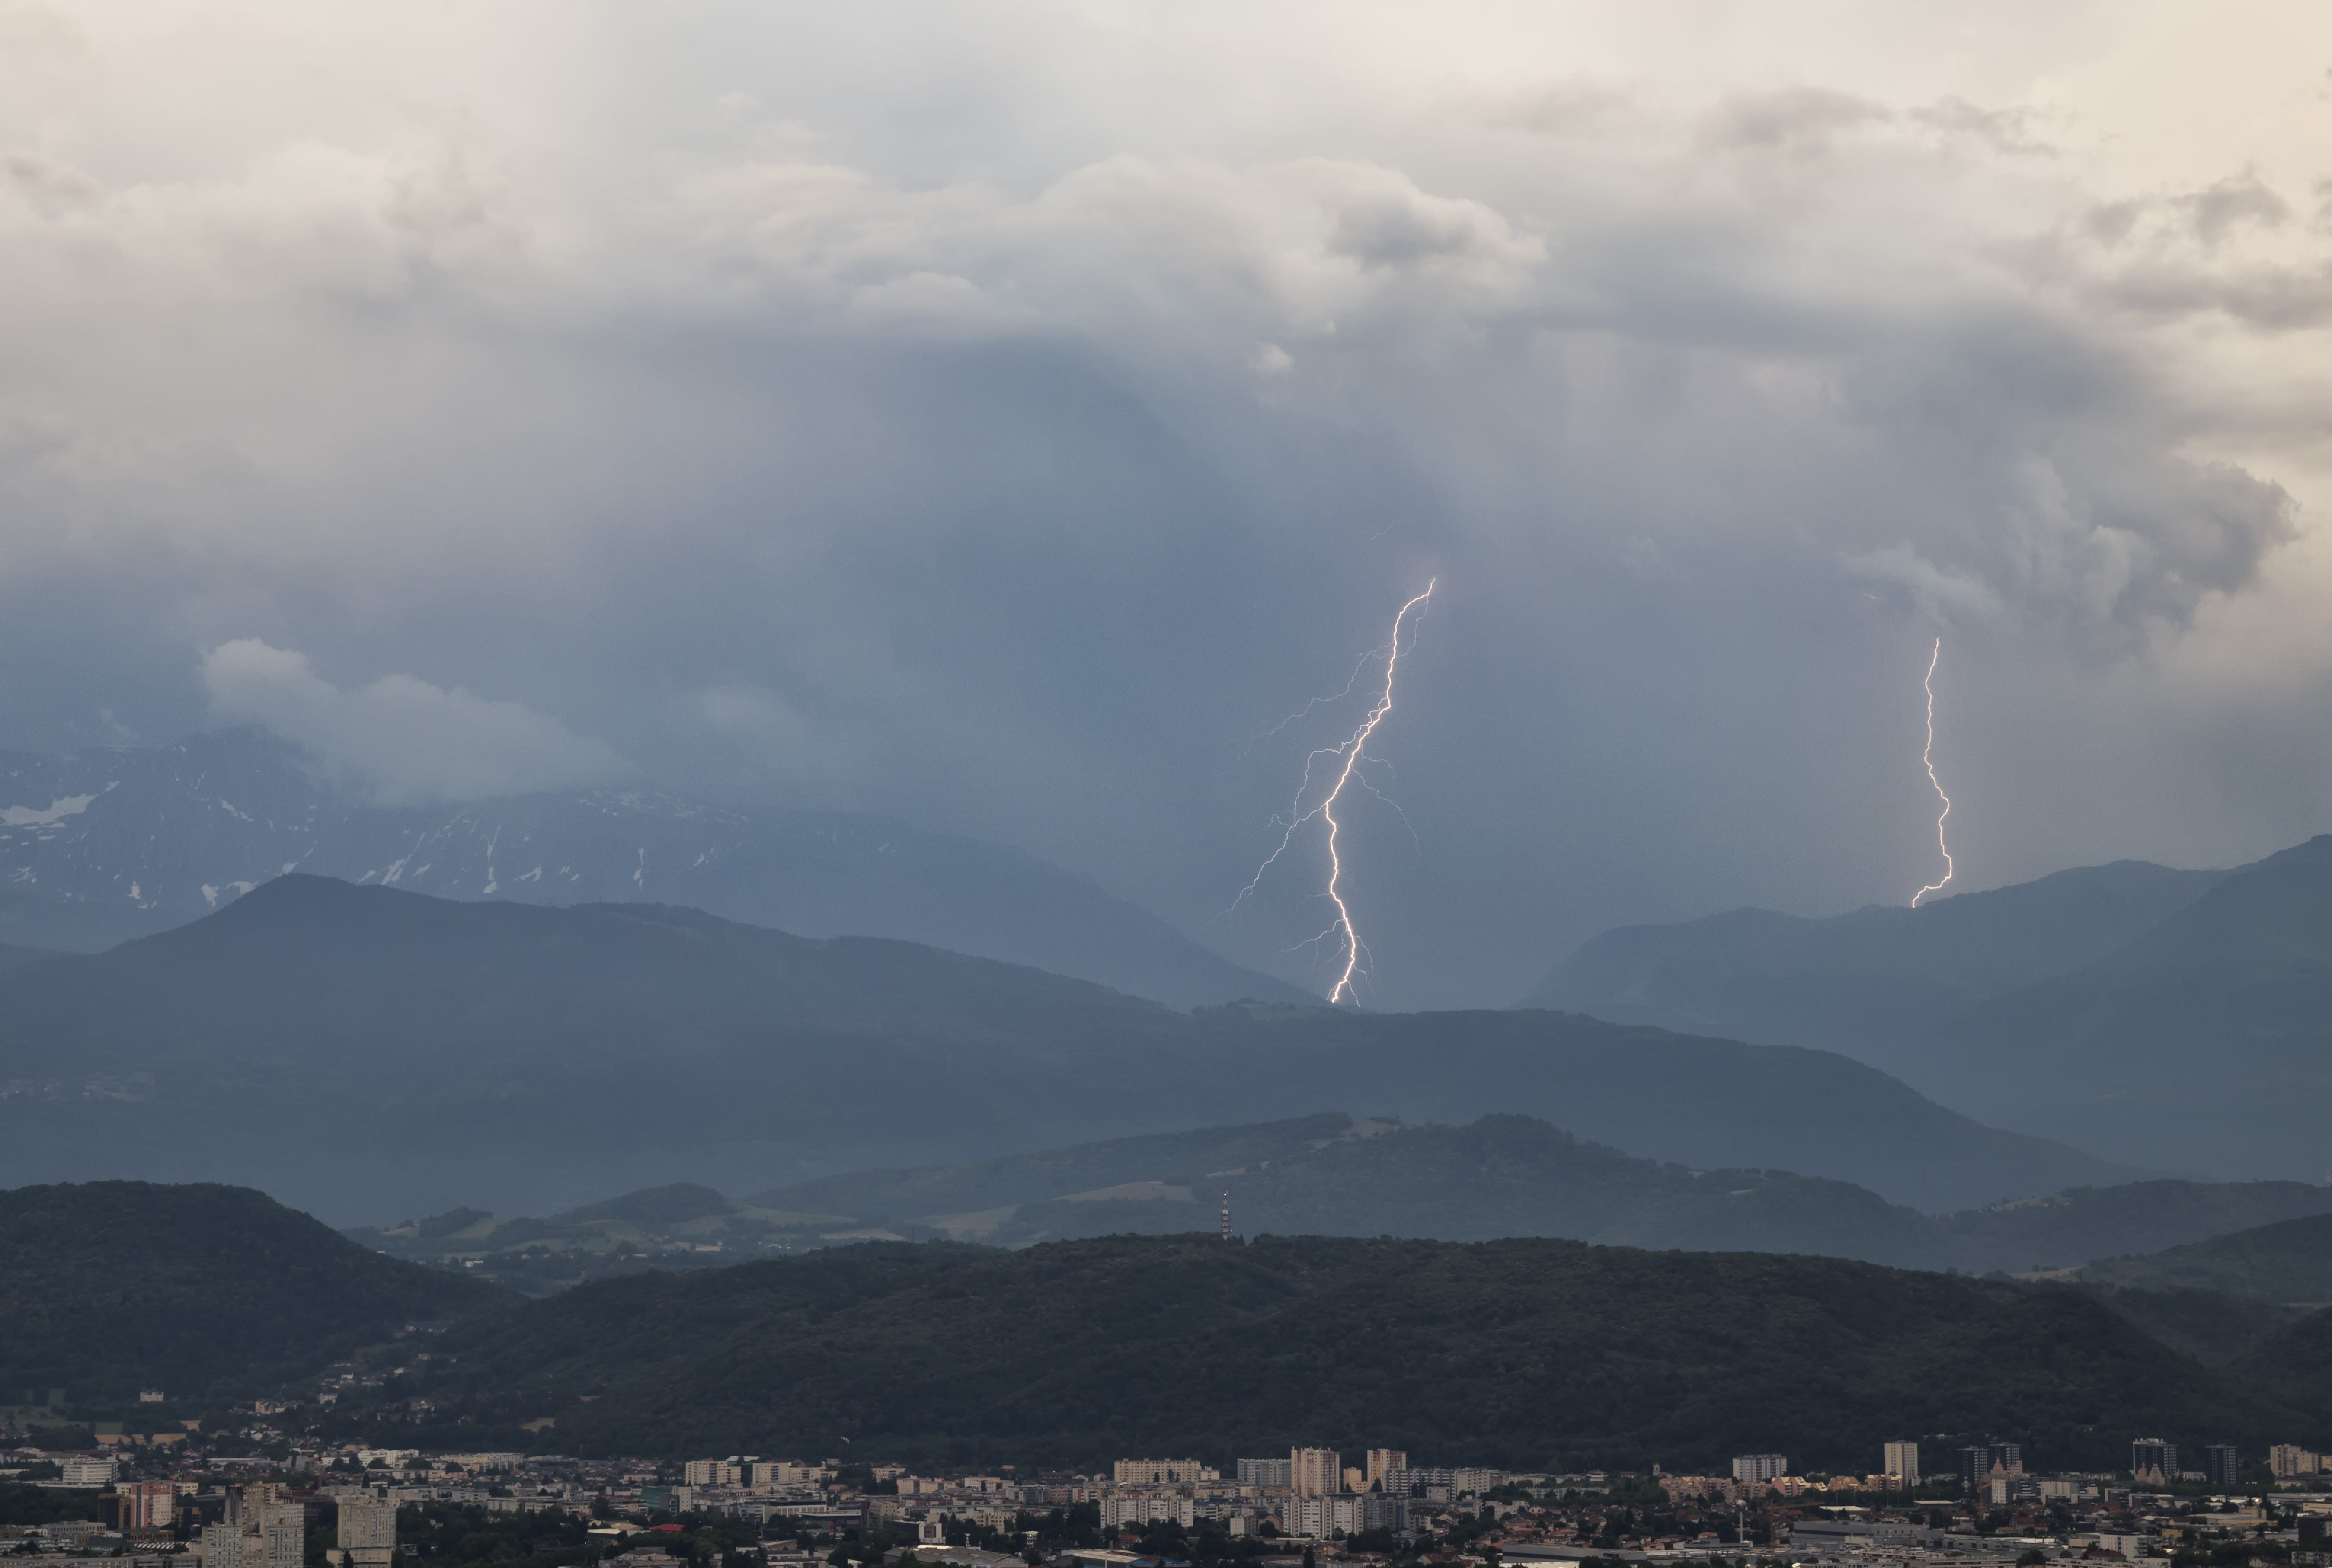 Orage en provenance de la Matheysine longeant la chaine de Belledonne depuis les hauteurs de Grenoble en Isère - 28/06/2021 20:21 - frederic sanchis